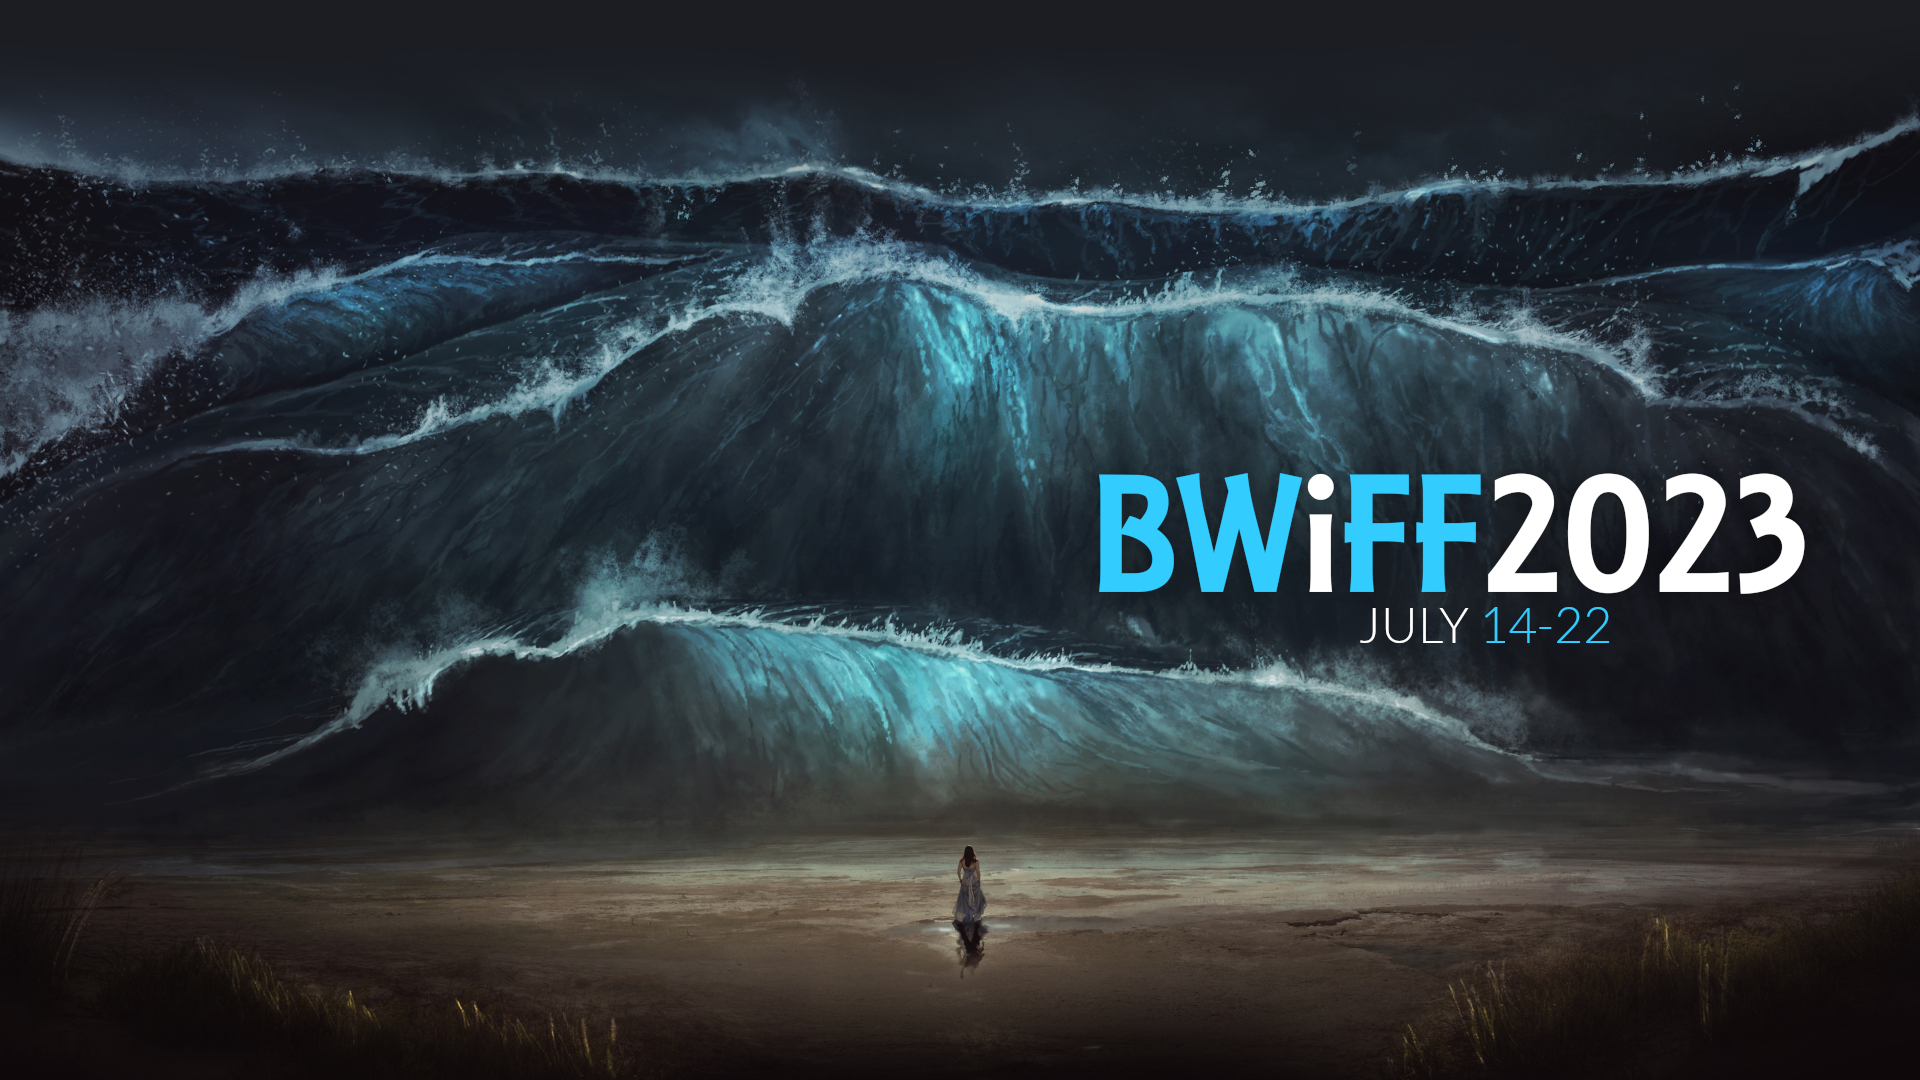 BWiFF 2023, July 14-22